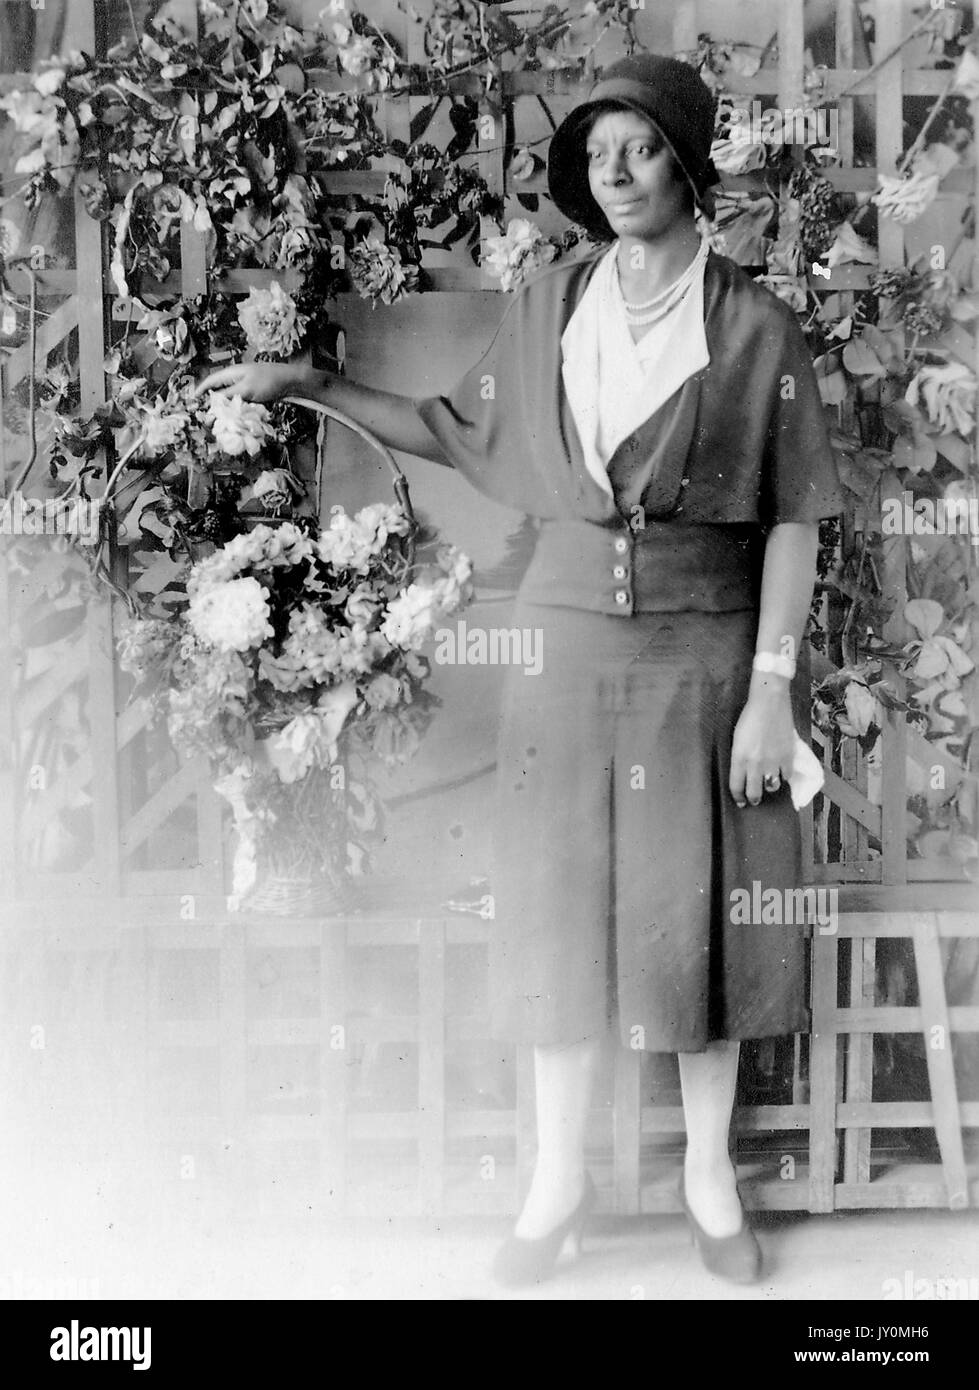 Ritratto a corpo pieno di donna afroamericana in piedi davanti ad una recinzione adornata con fiori bianchi, come lei tiene un cesto dei fiori nella sua mano destra, indossando un abito scuro, tenendo un fazzoletto nella sua altra mano, con una seria espressione facciale, 1920. Foto Stock